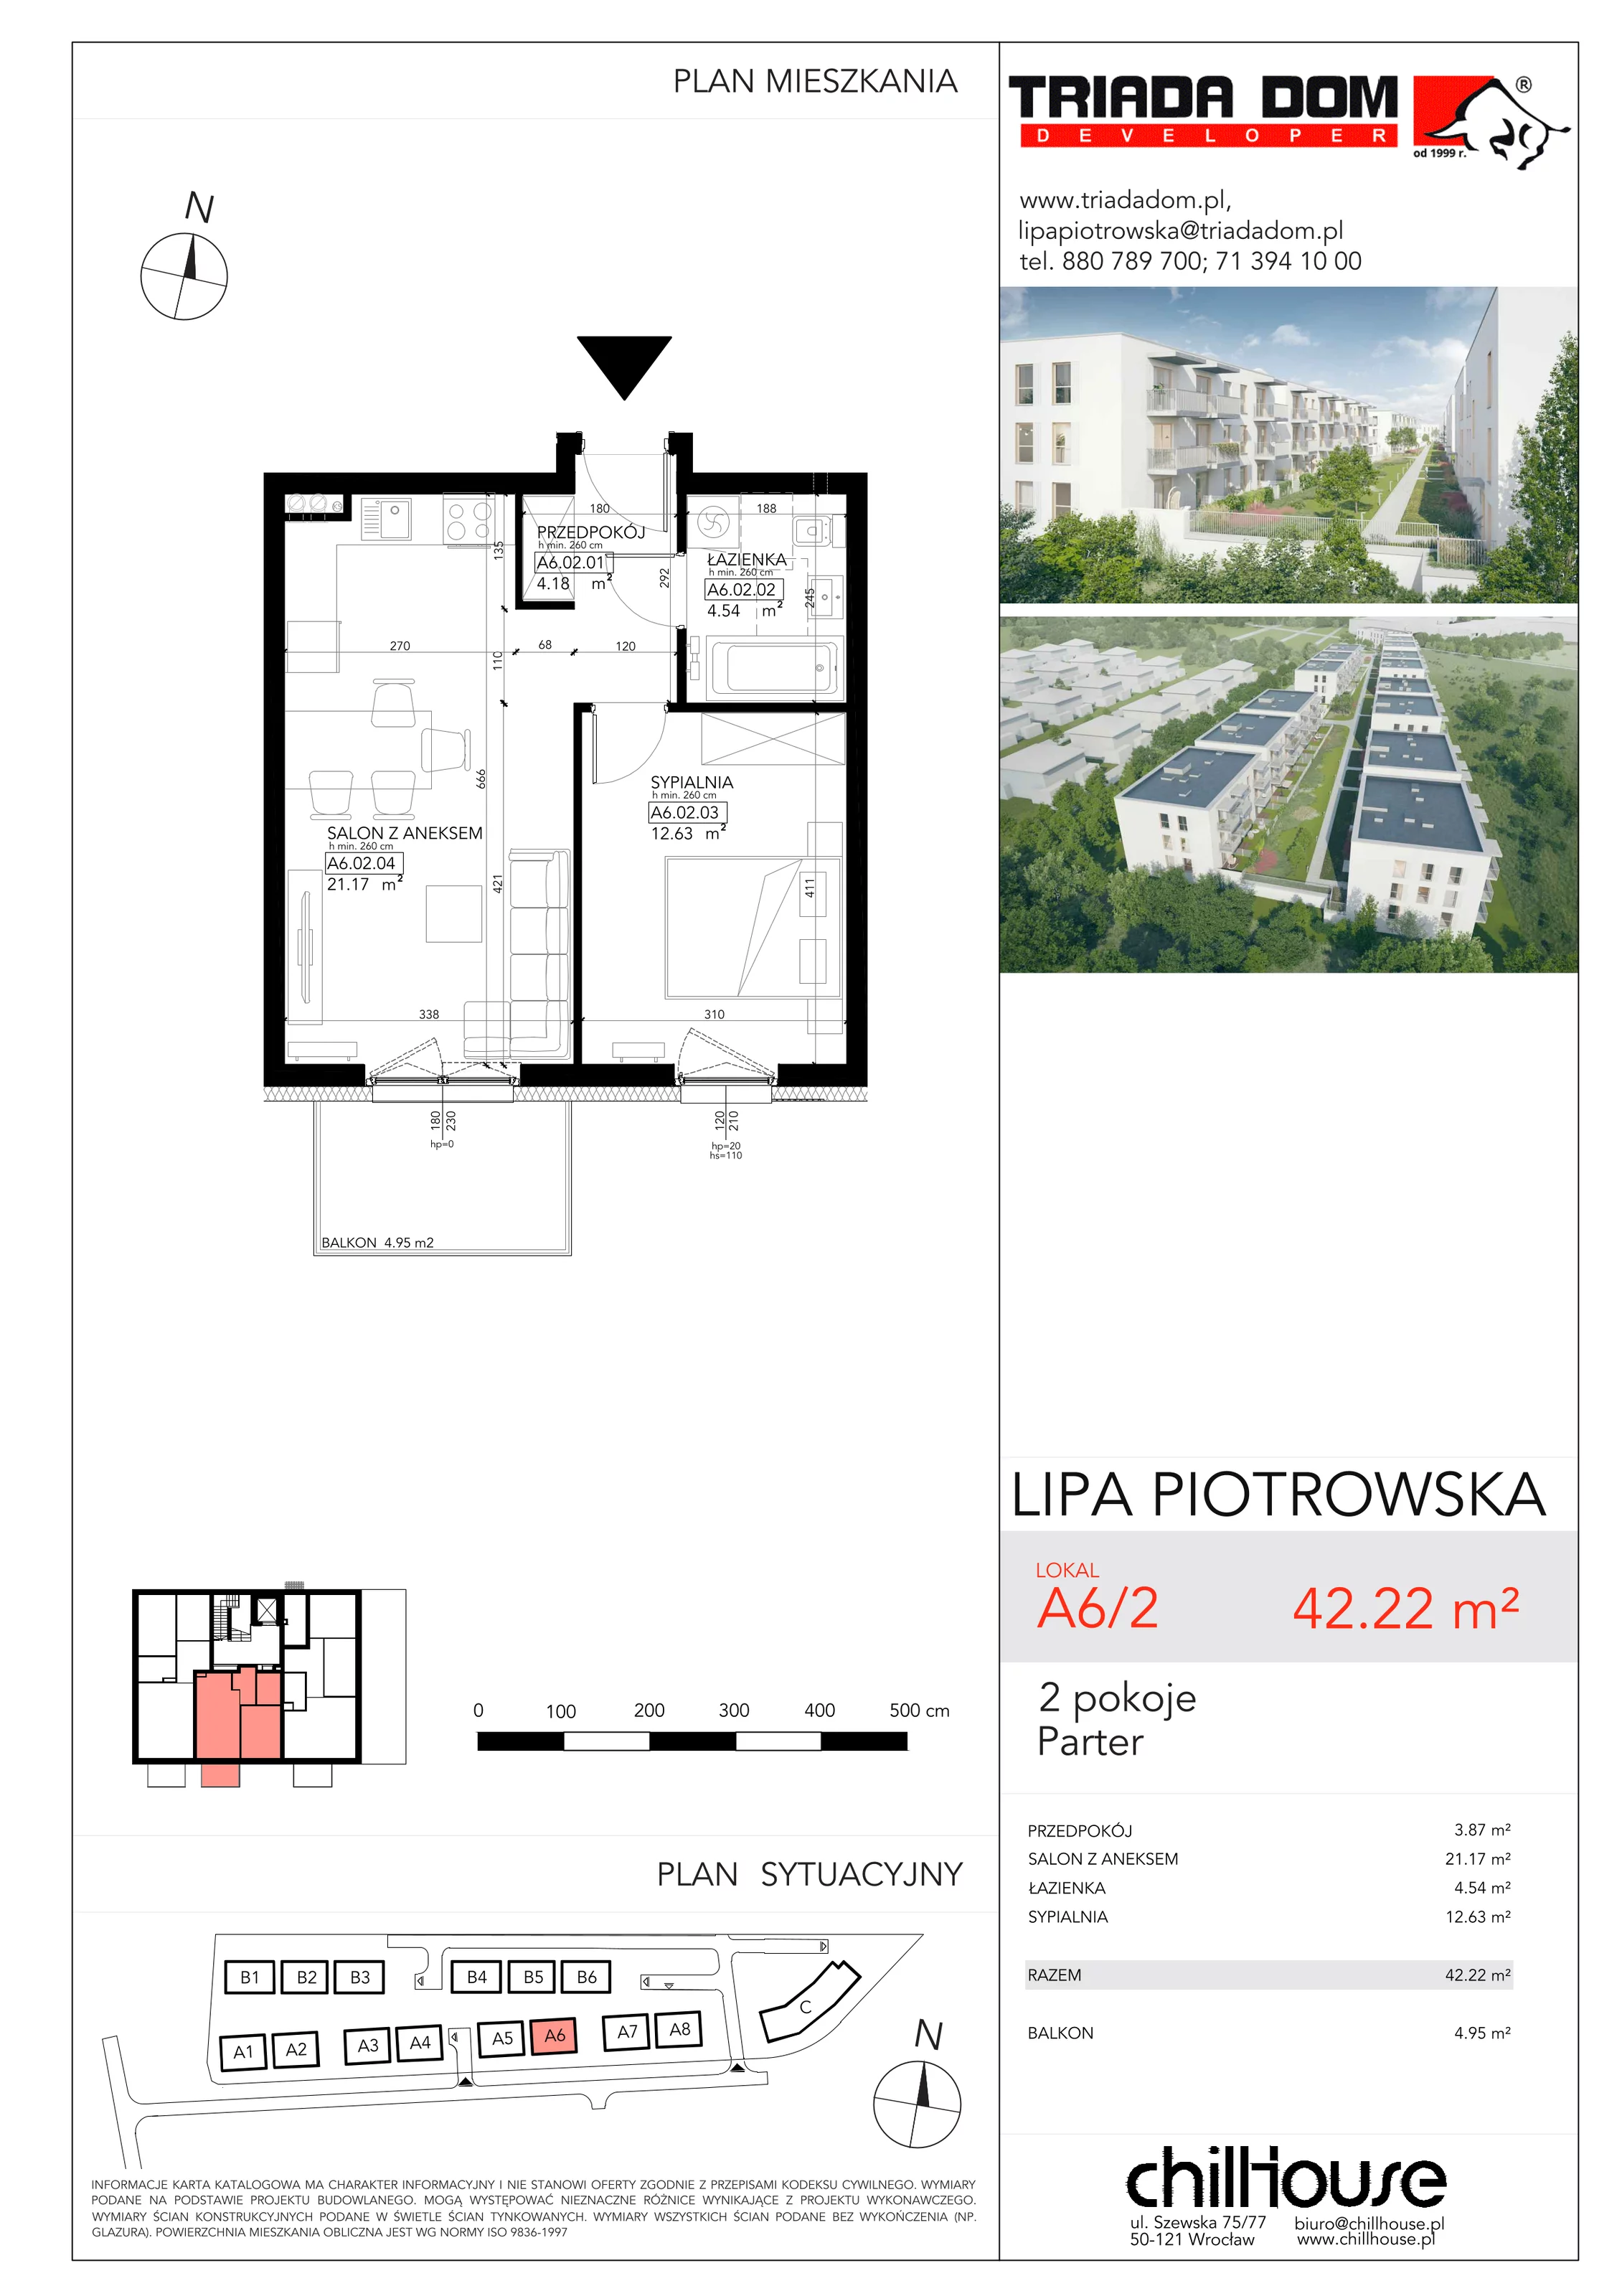 Mieszkanie 42,22 m², parter, oferta nr A62, Lipa Piotrowska, Wrocław, Lipa Piotrowska, ul. Lawendowa / Melisowa